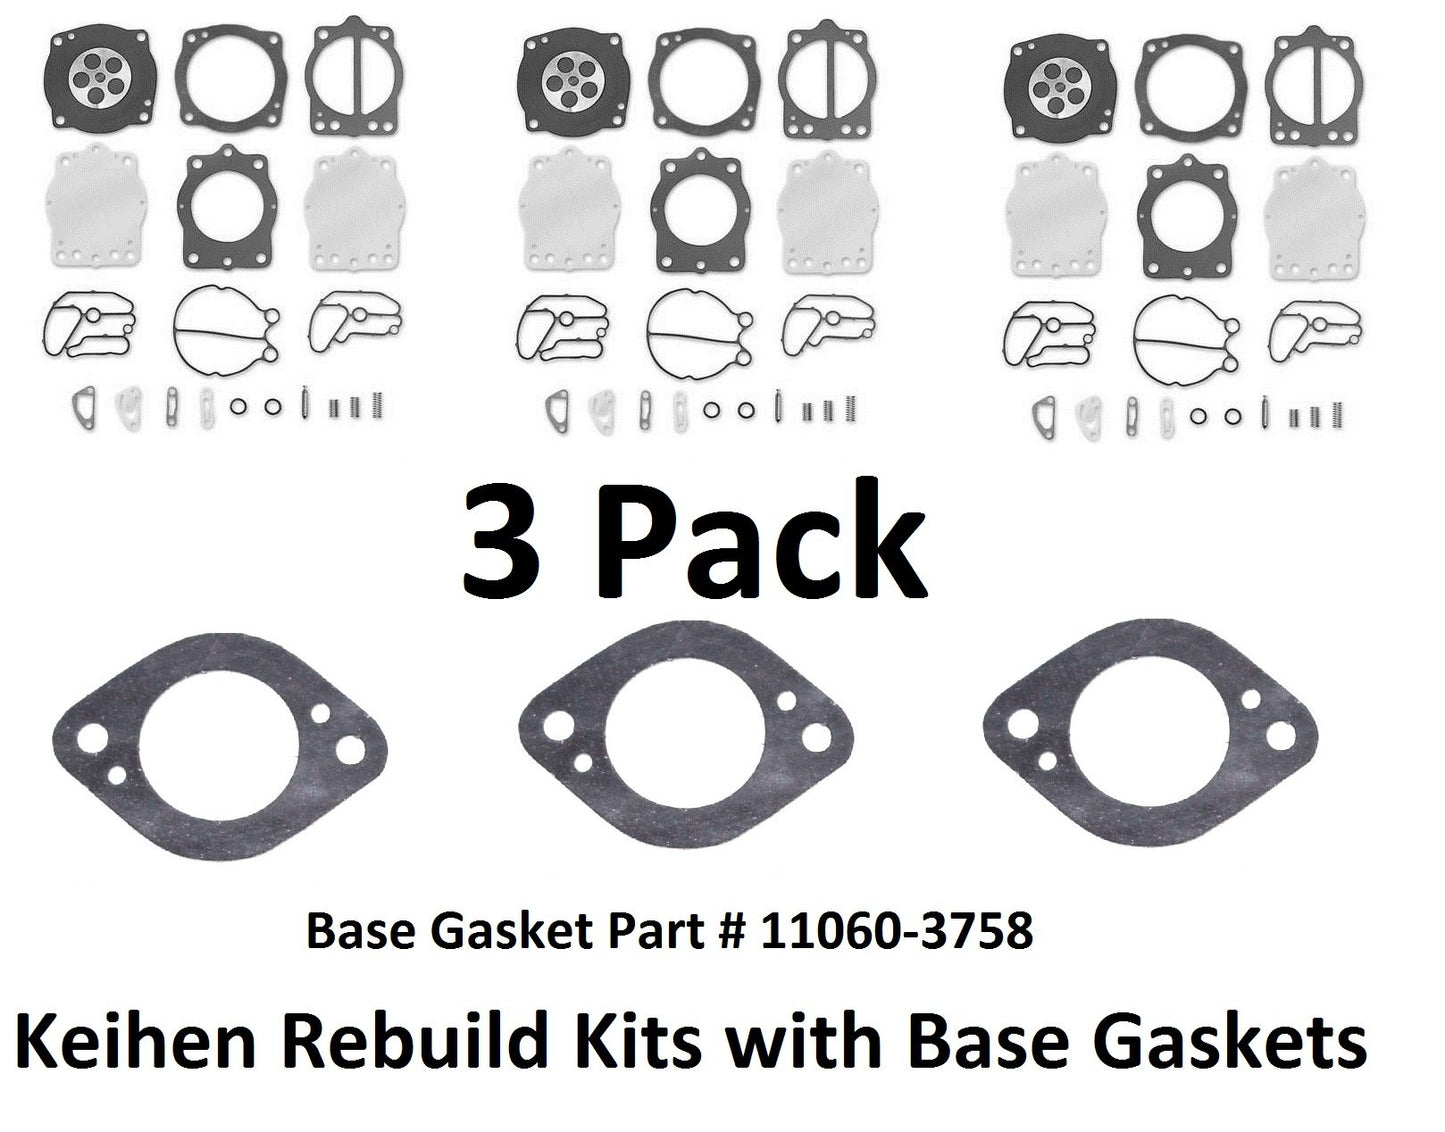 Kawasaki Keihin Carb Kit & Base Gasket 11060-3758 Ssxi St Xi Bg